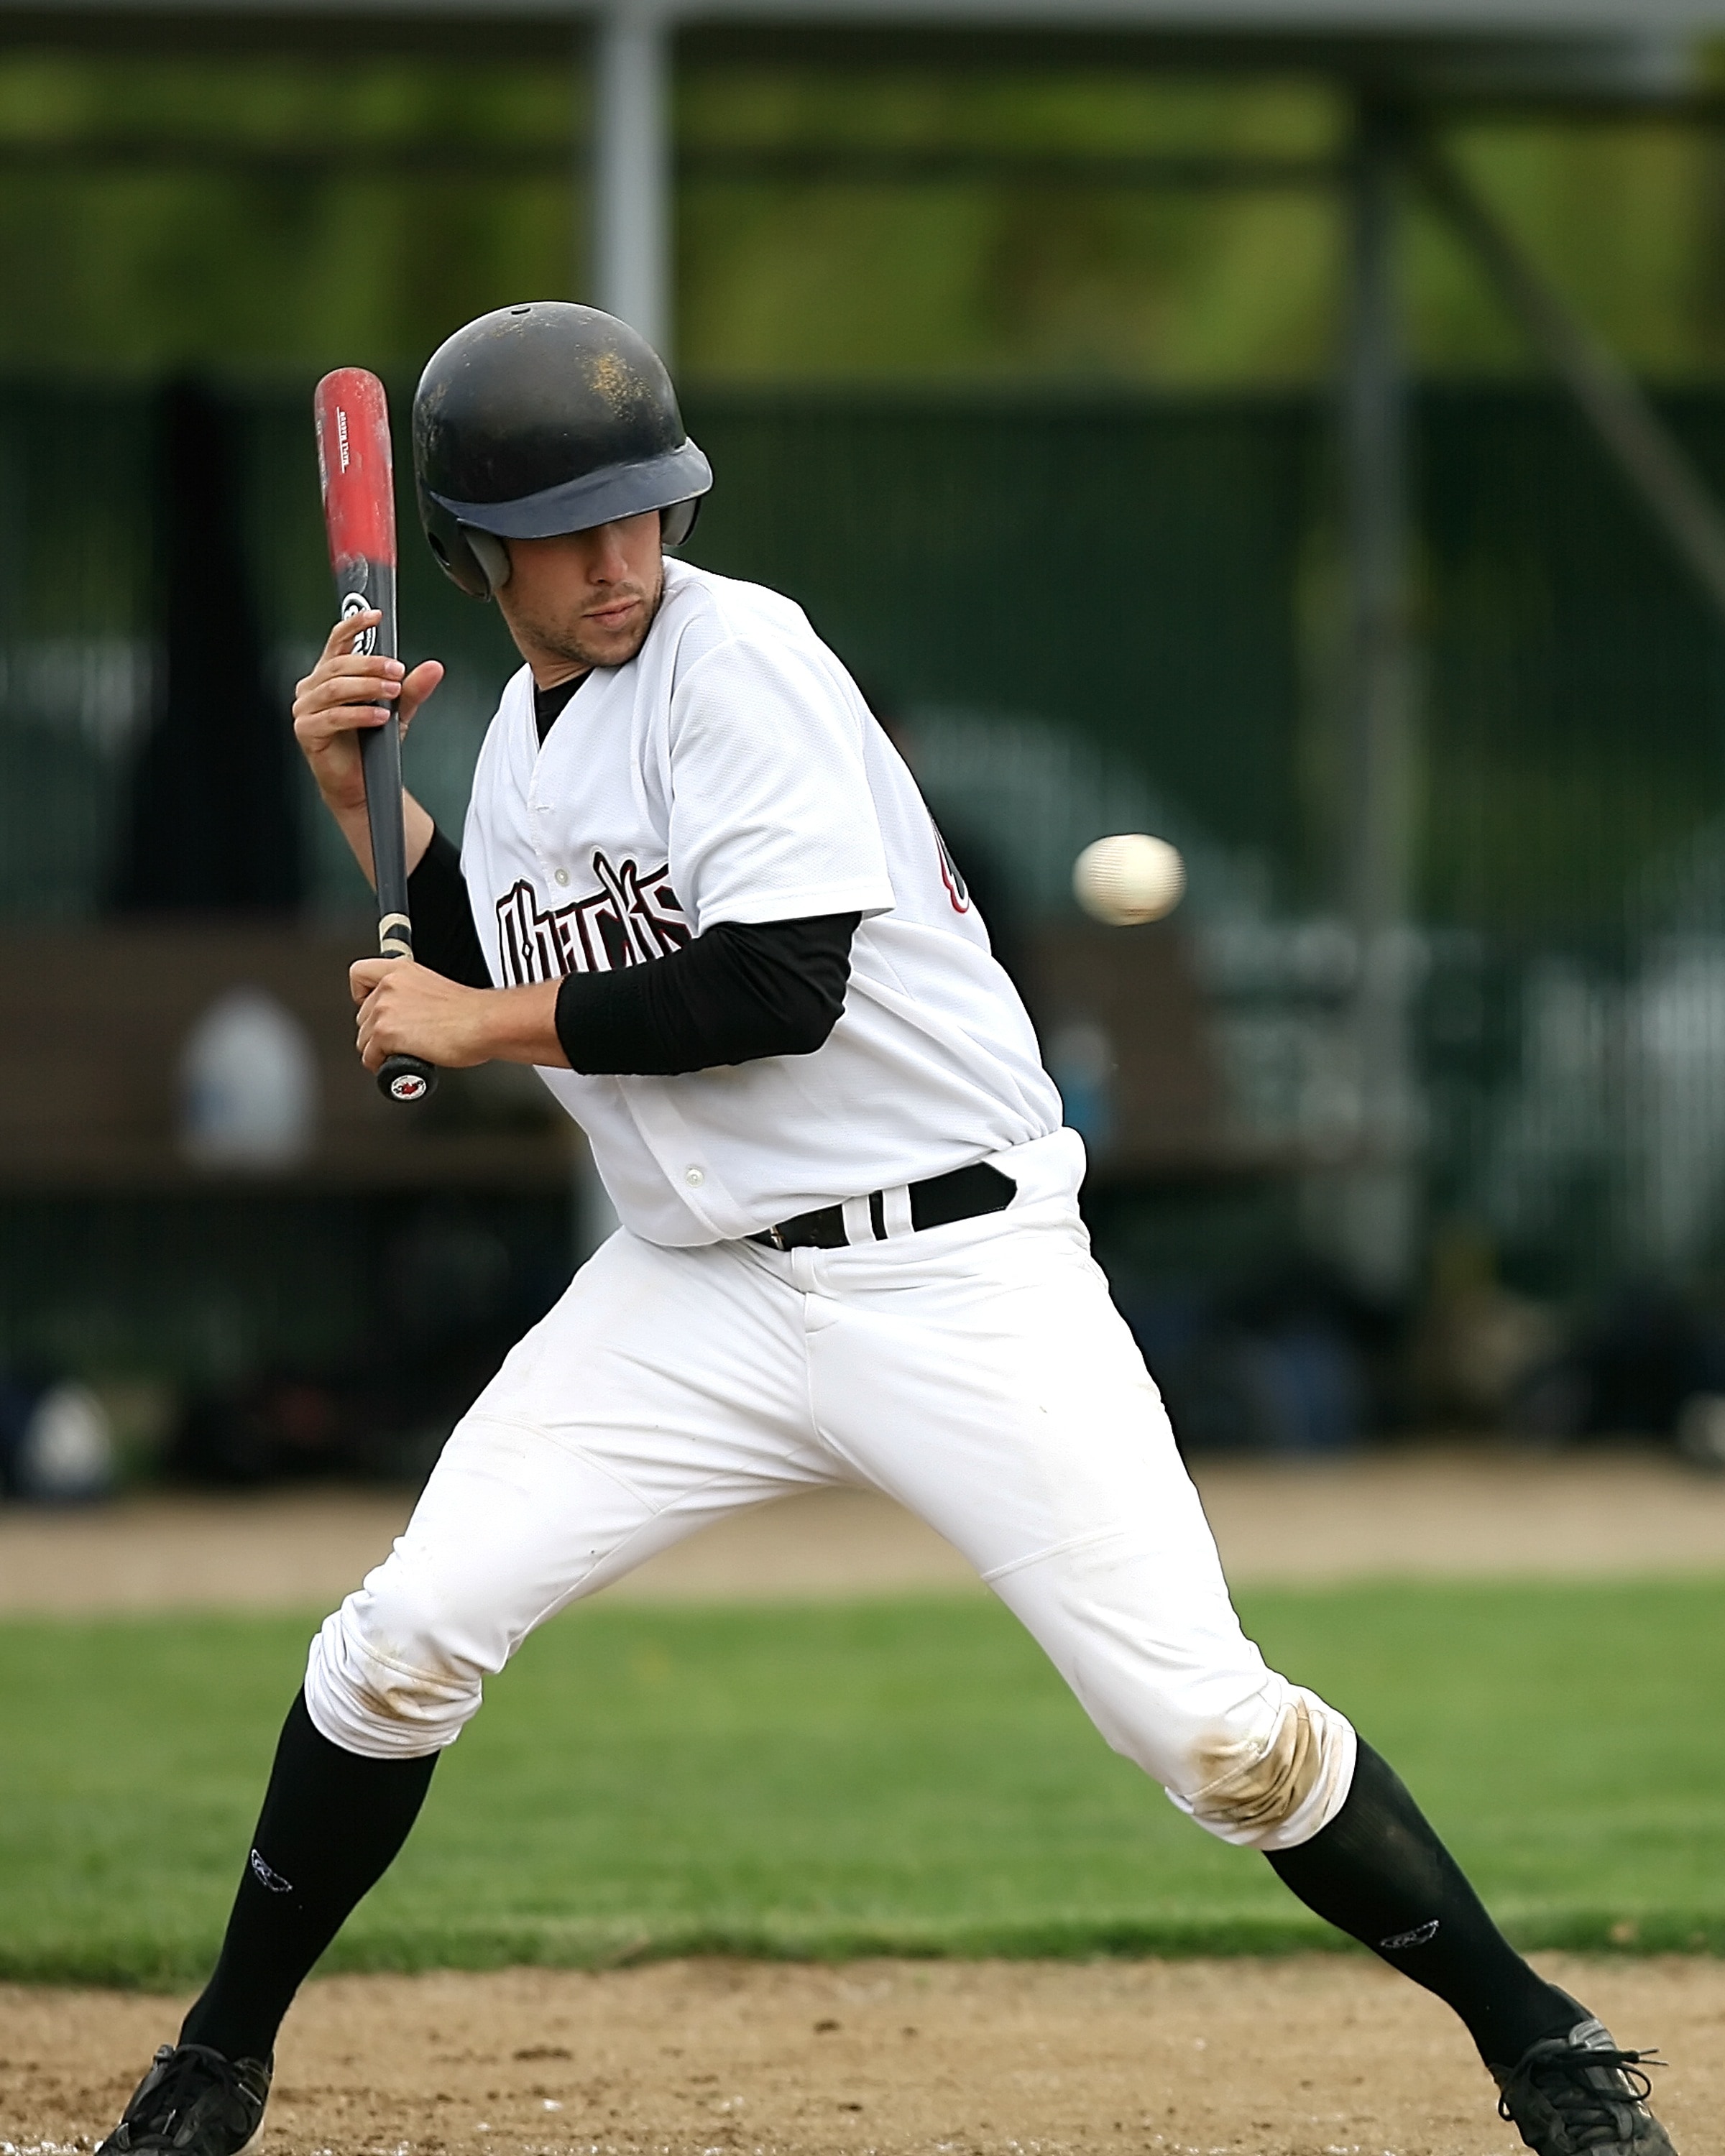 men's white baseball jersey suit and black helmet with baseball bat